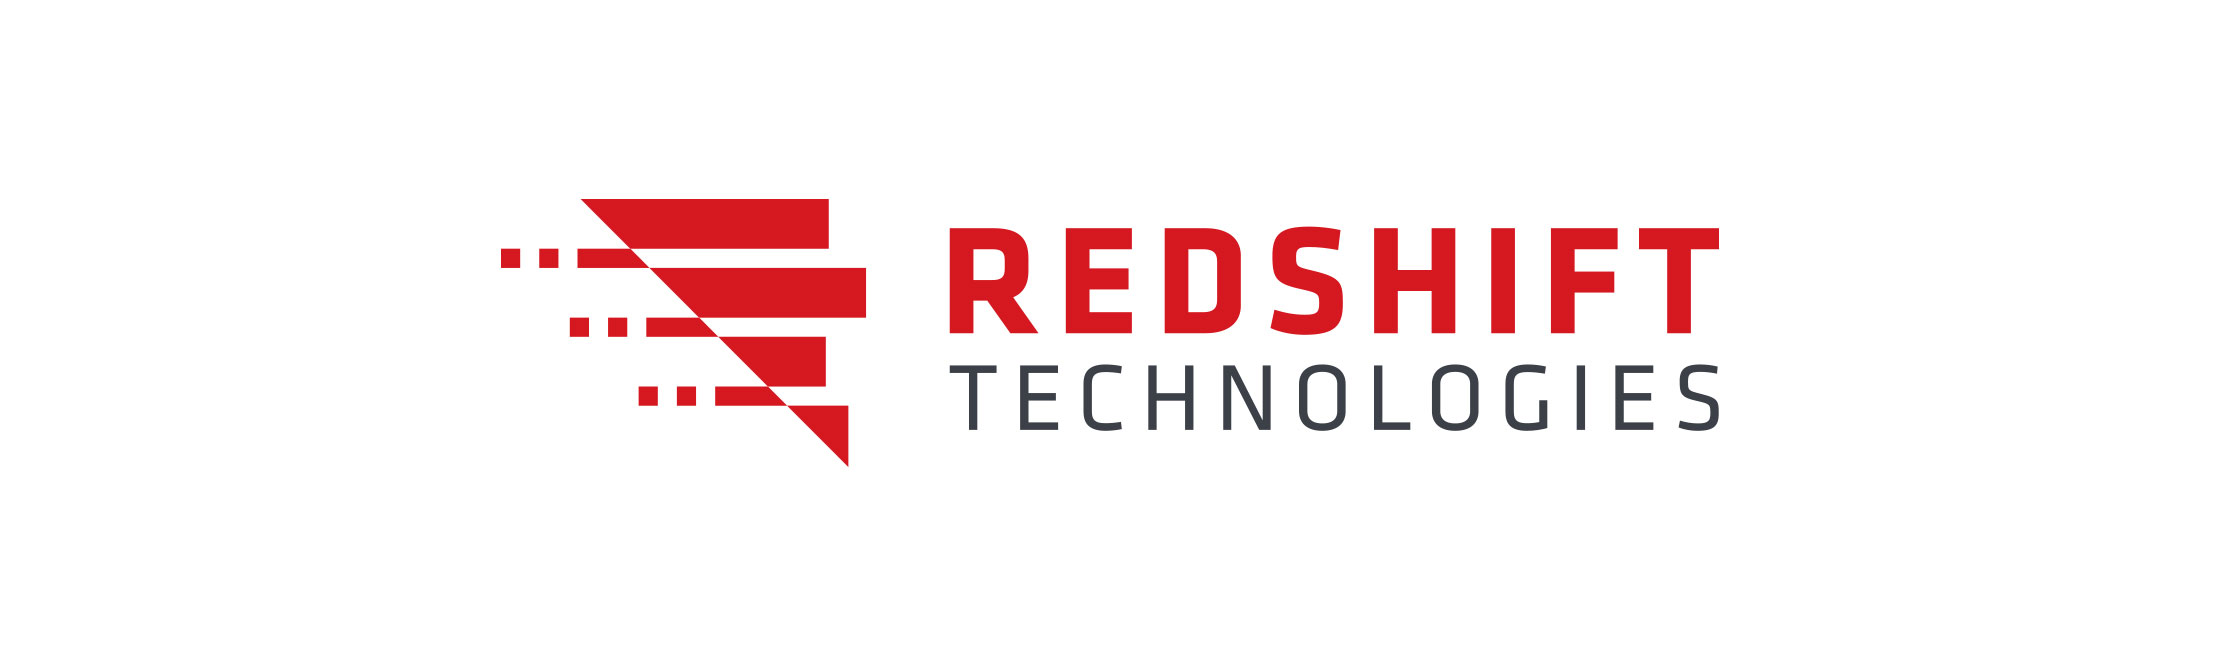 Redshift-1